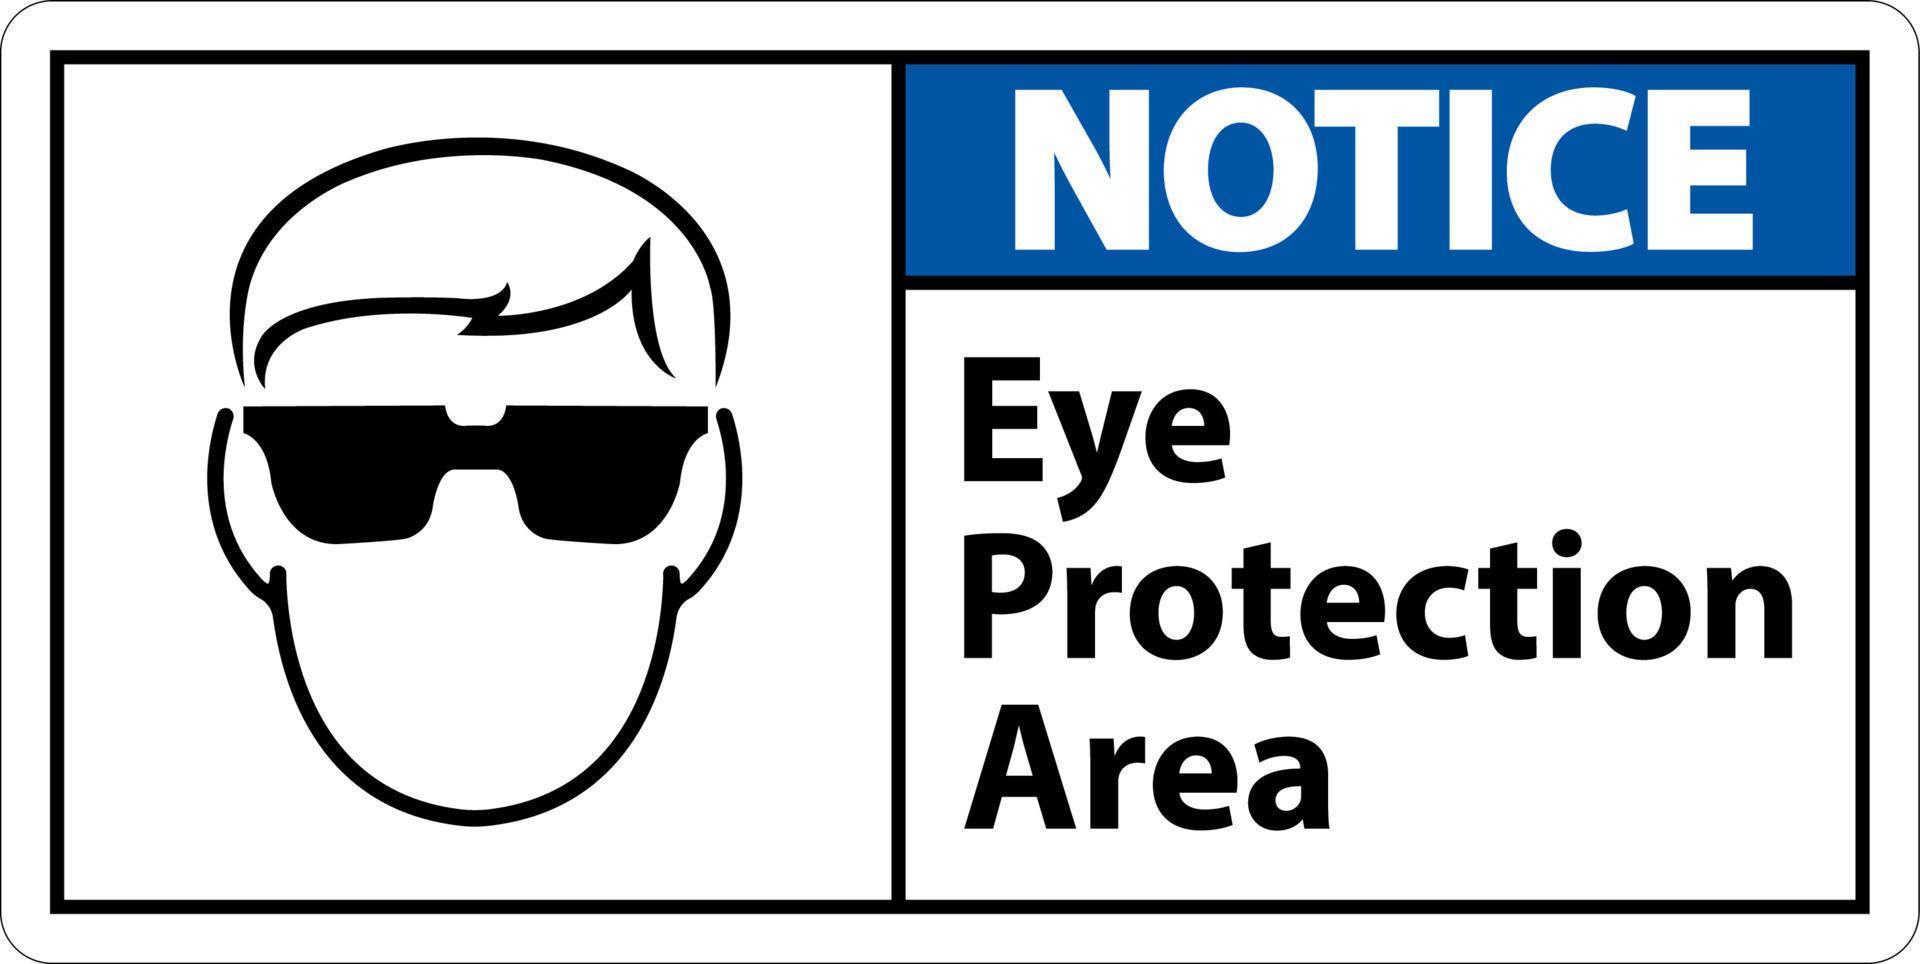 aviso prévio olho proteção área símbolo placa em branco fundo vetor